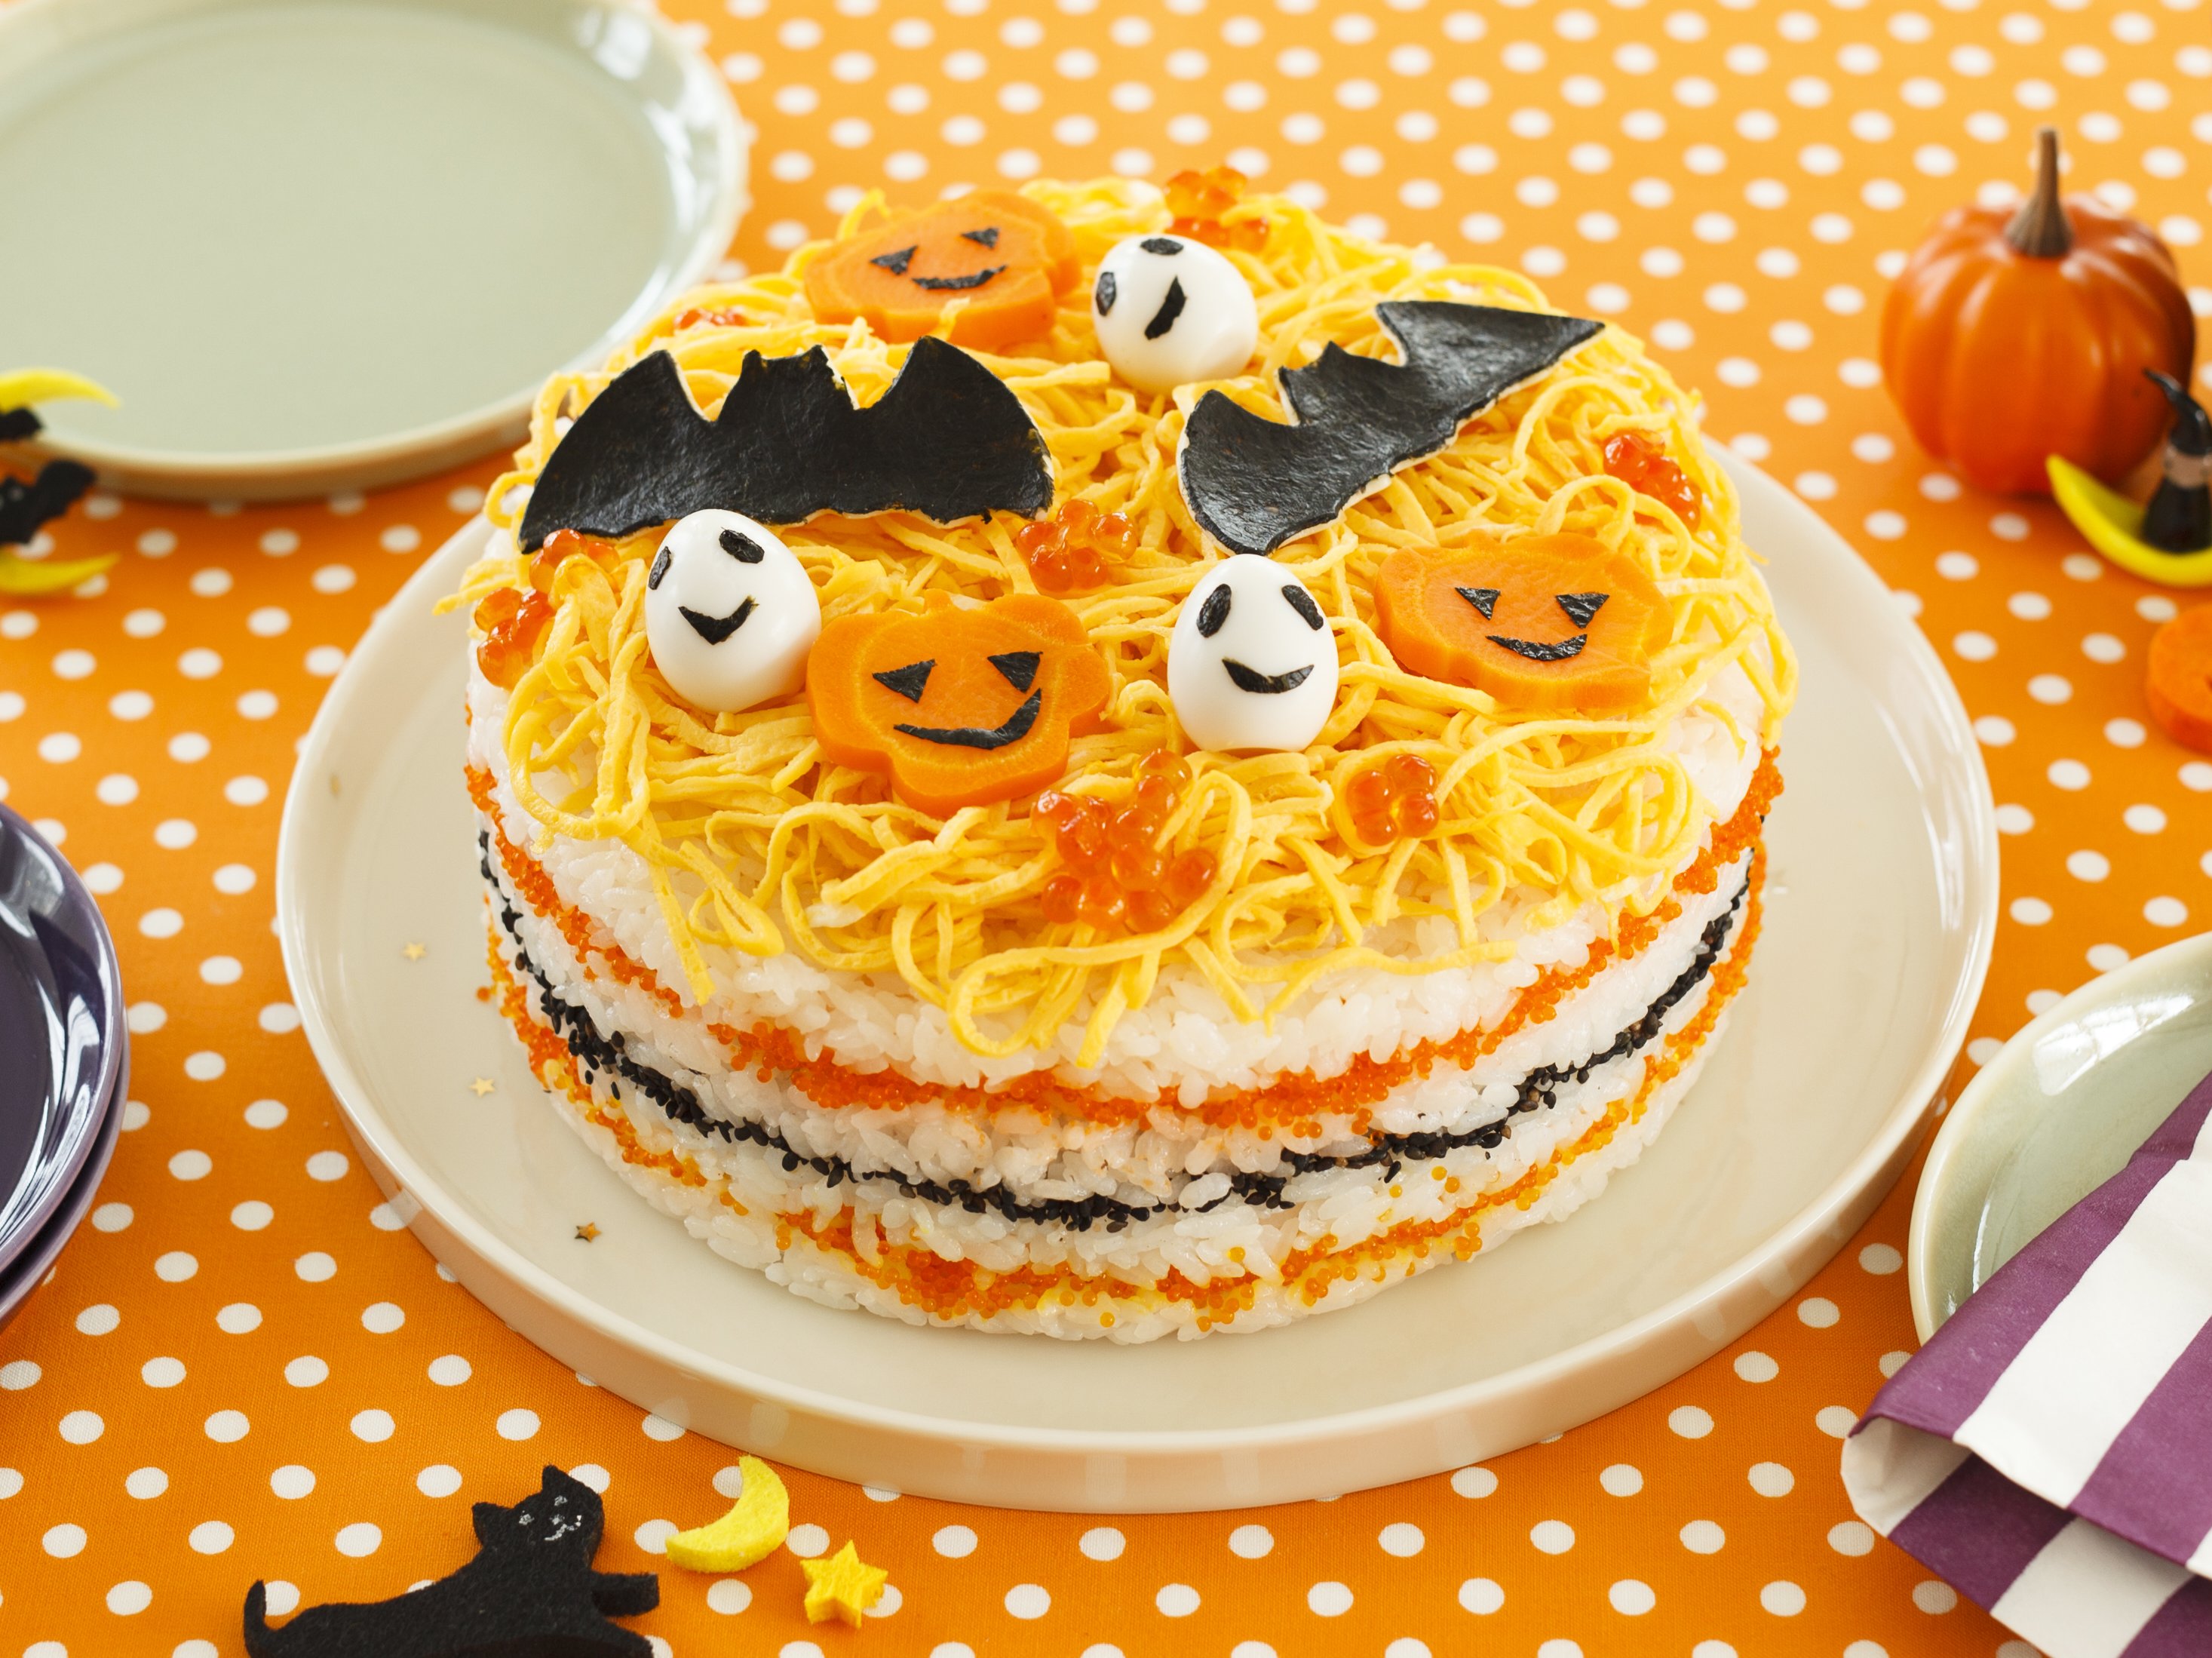 こうもりとかぼちゃのケーキすし